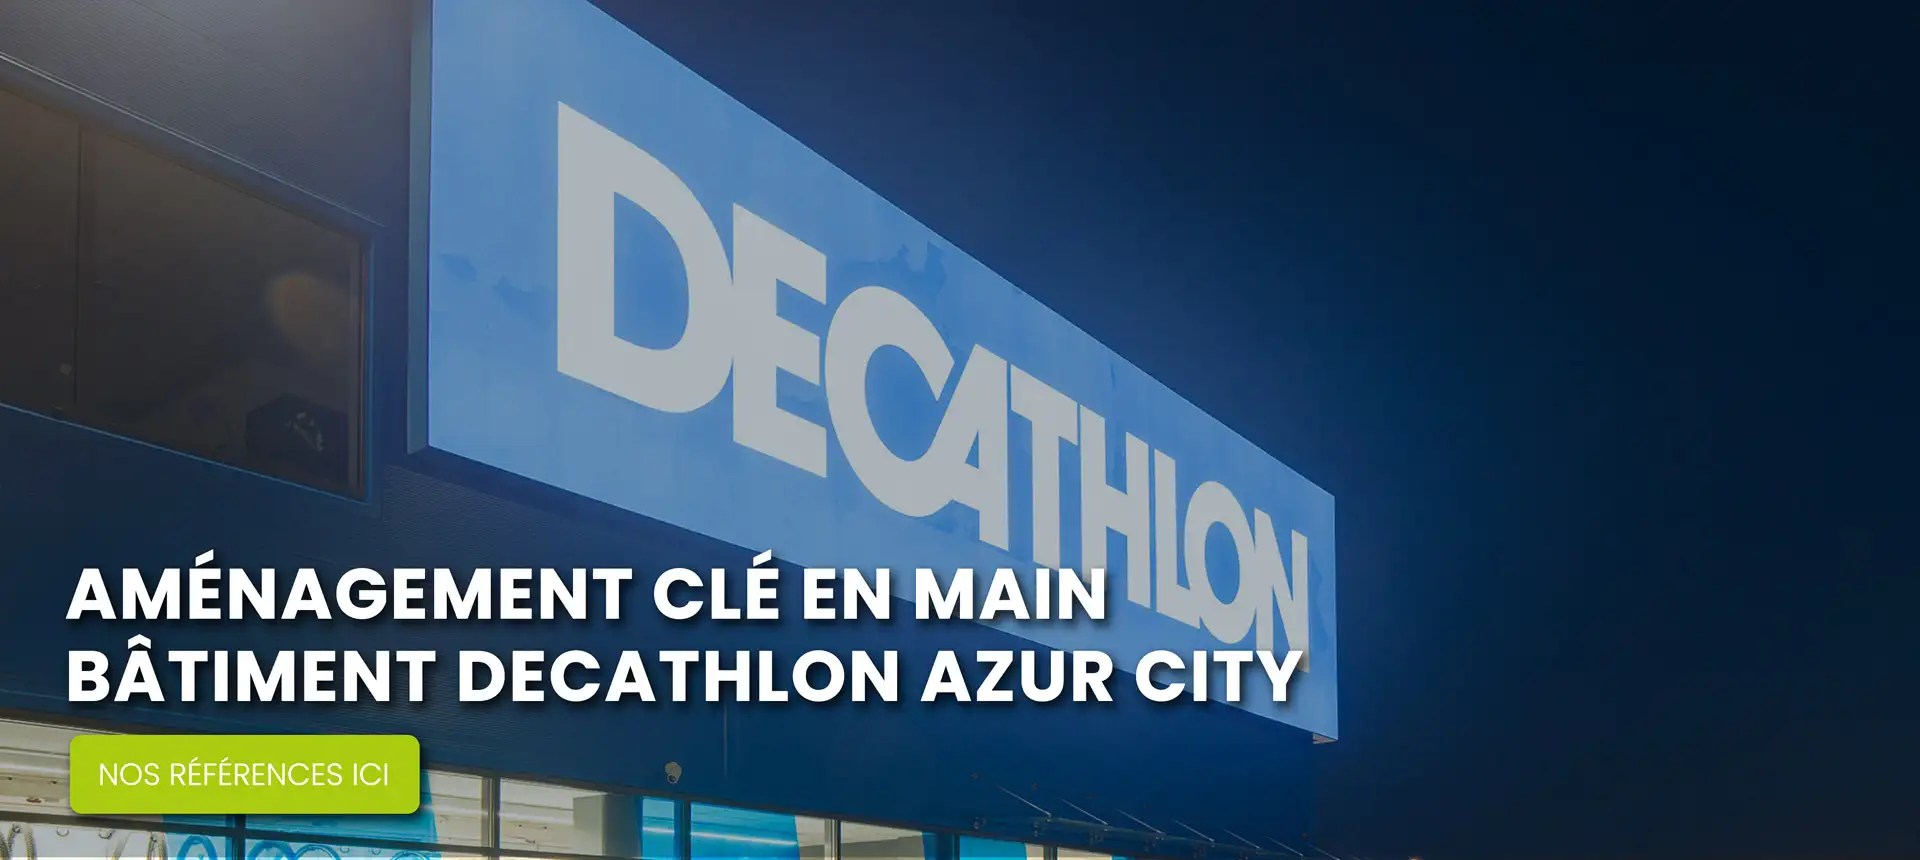 Decathlon azur city Tunisie